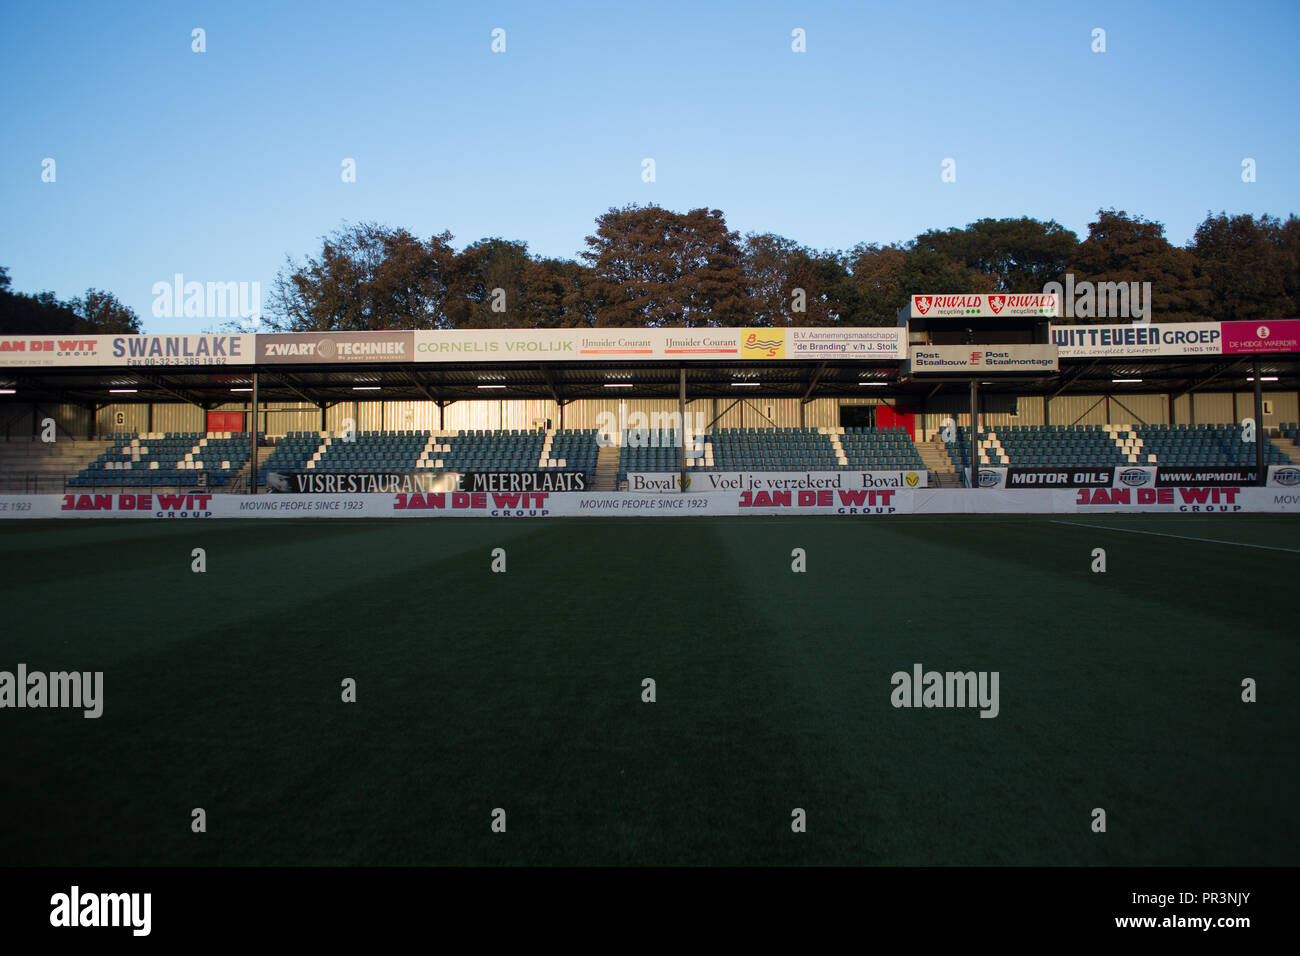 El SC Telstar's Stadium, Rabobank IJmond Stadion, antes de un partido de fútbol. Foto de stock